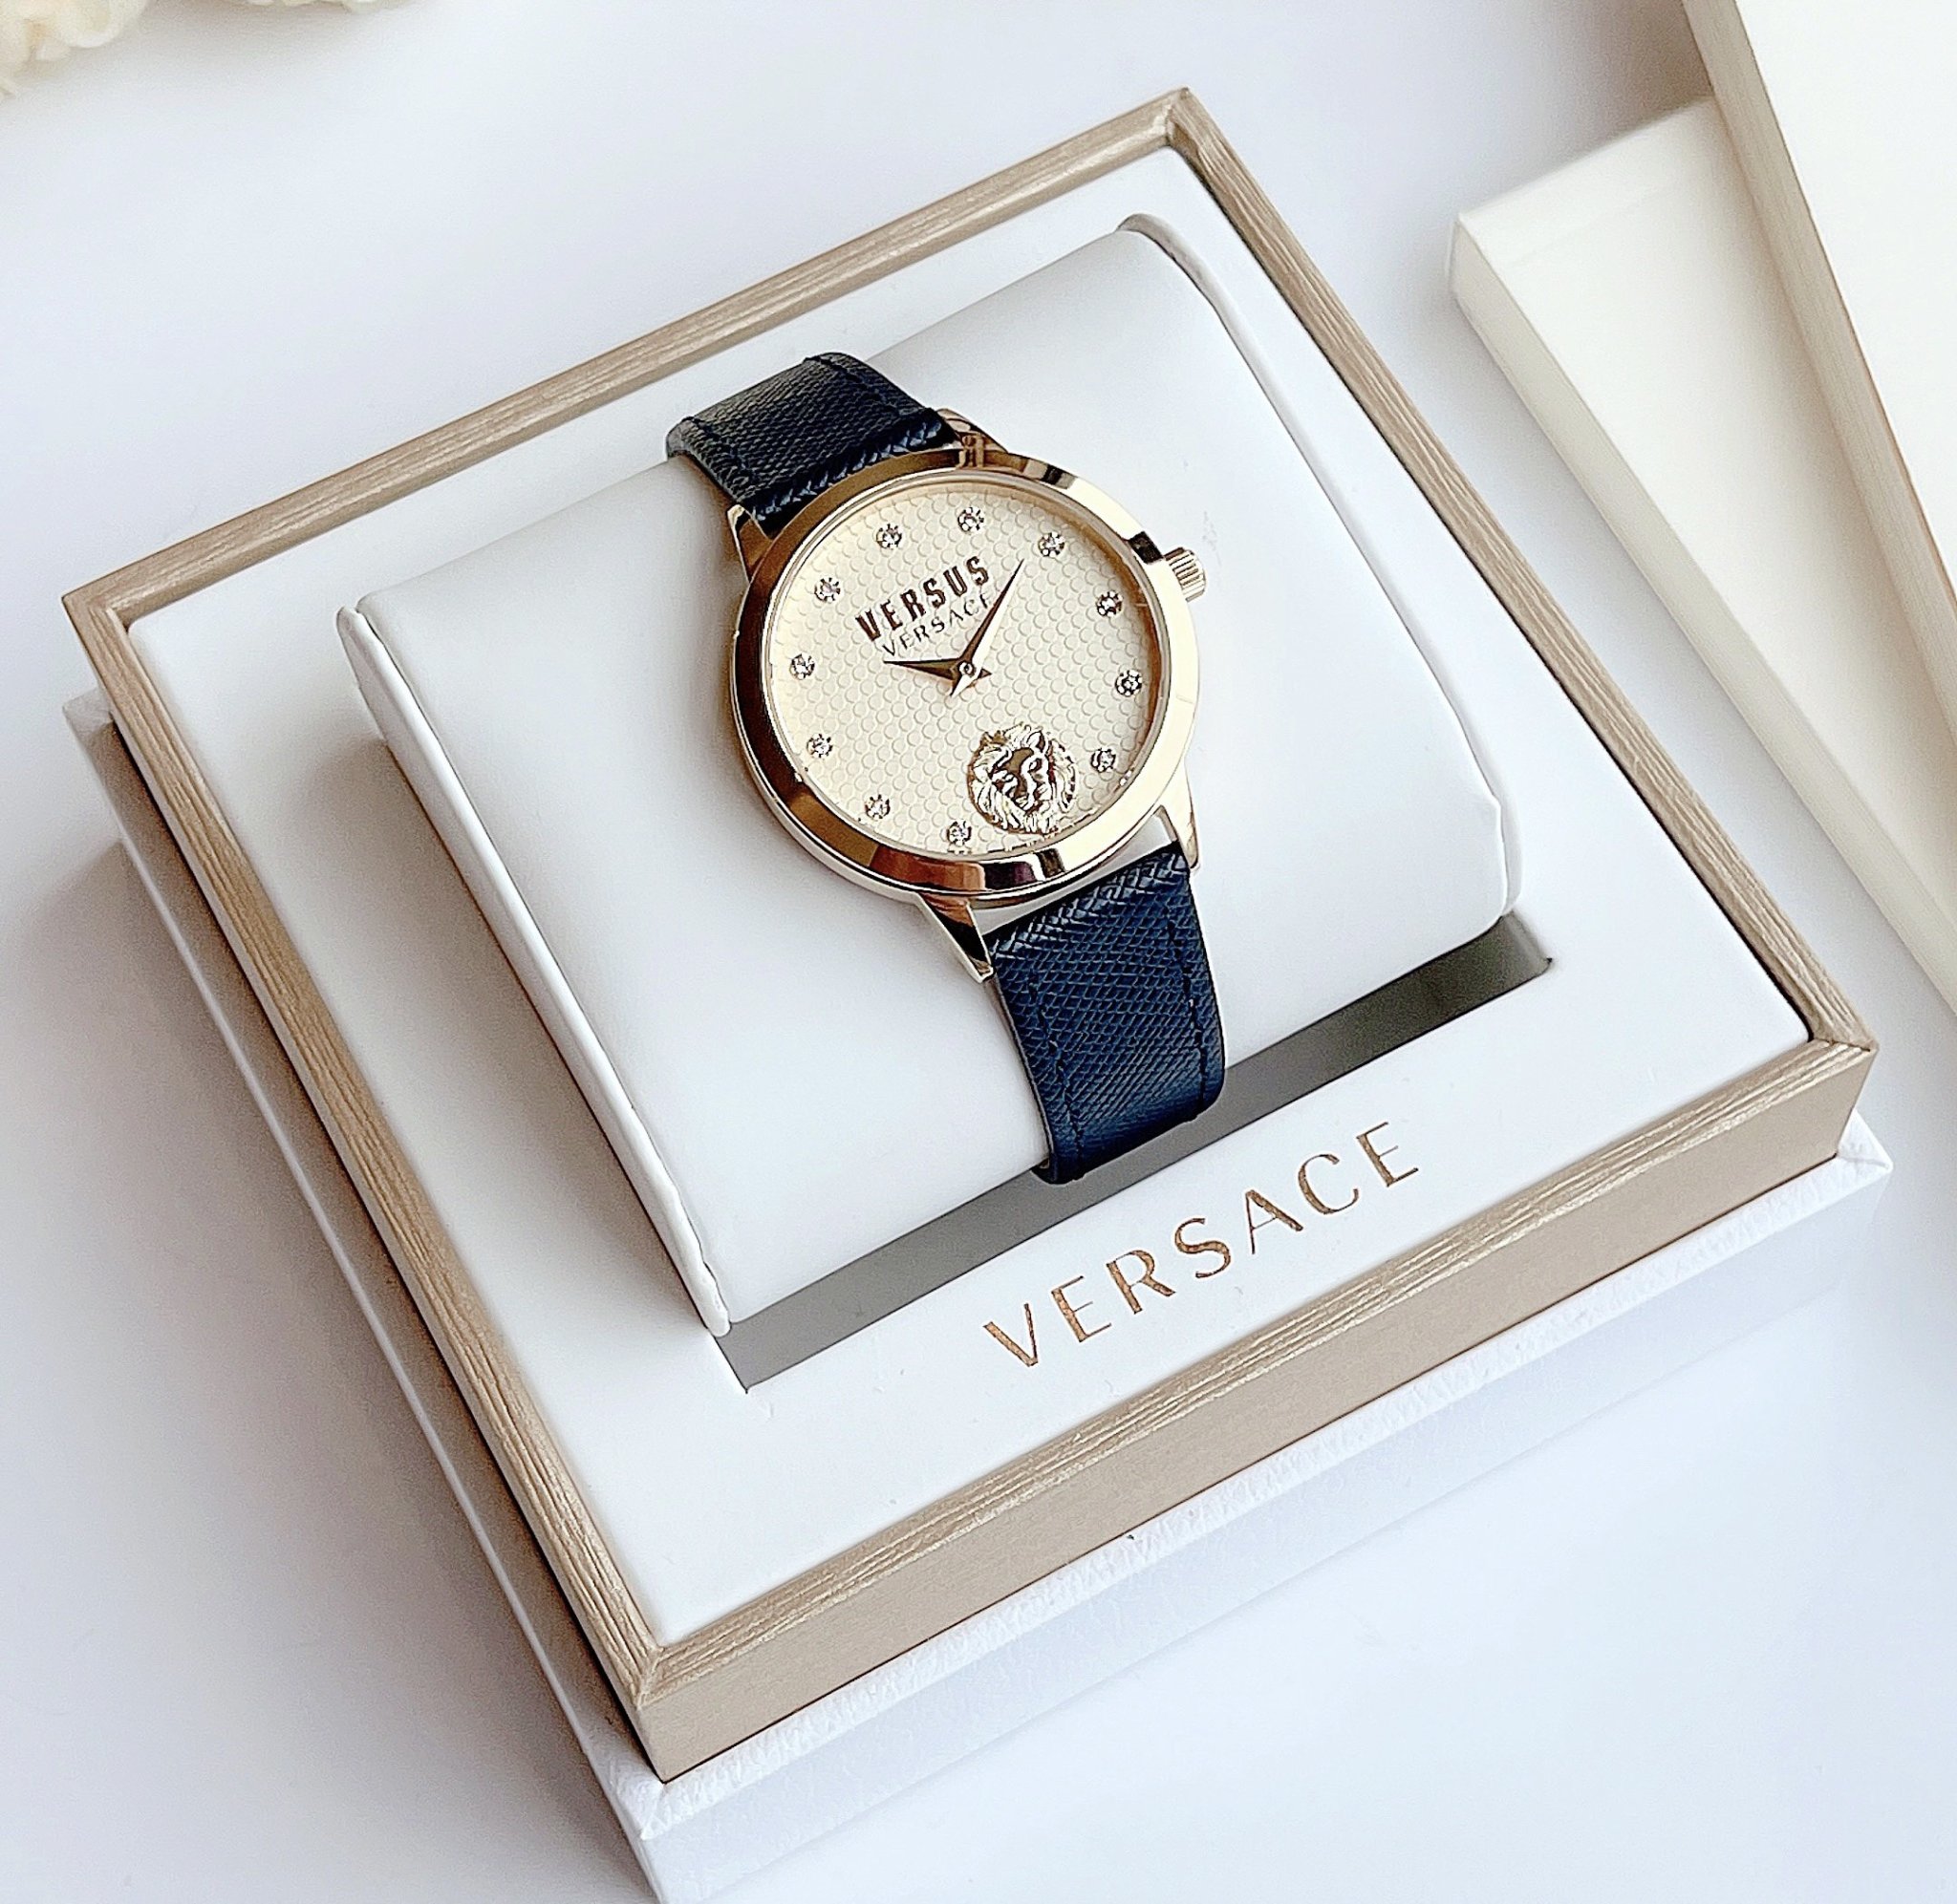 Đồng hồ nữ Versus by Versace sang chảnh máy nhật